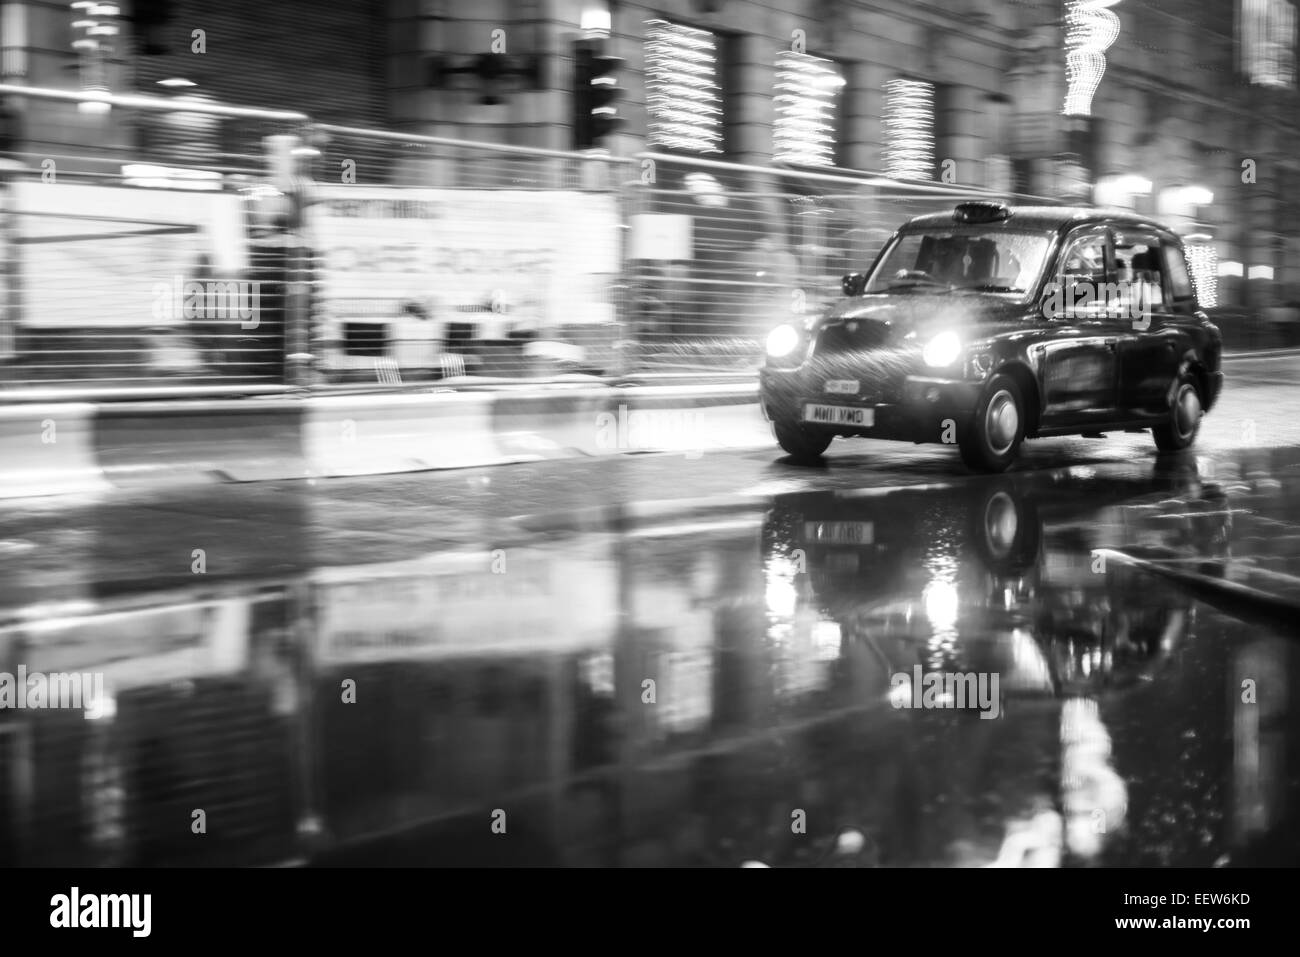 Eine englische Taxi macht seinen Weg durch den Regen. Stockfoto